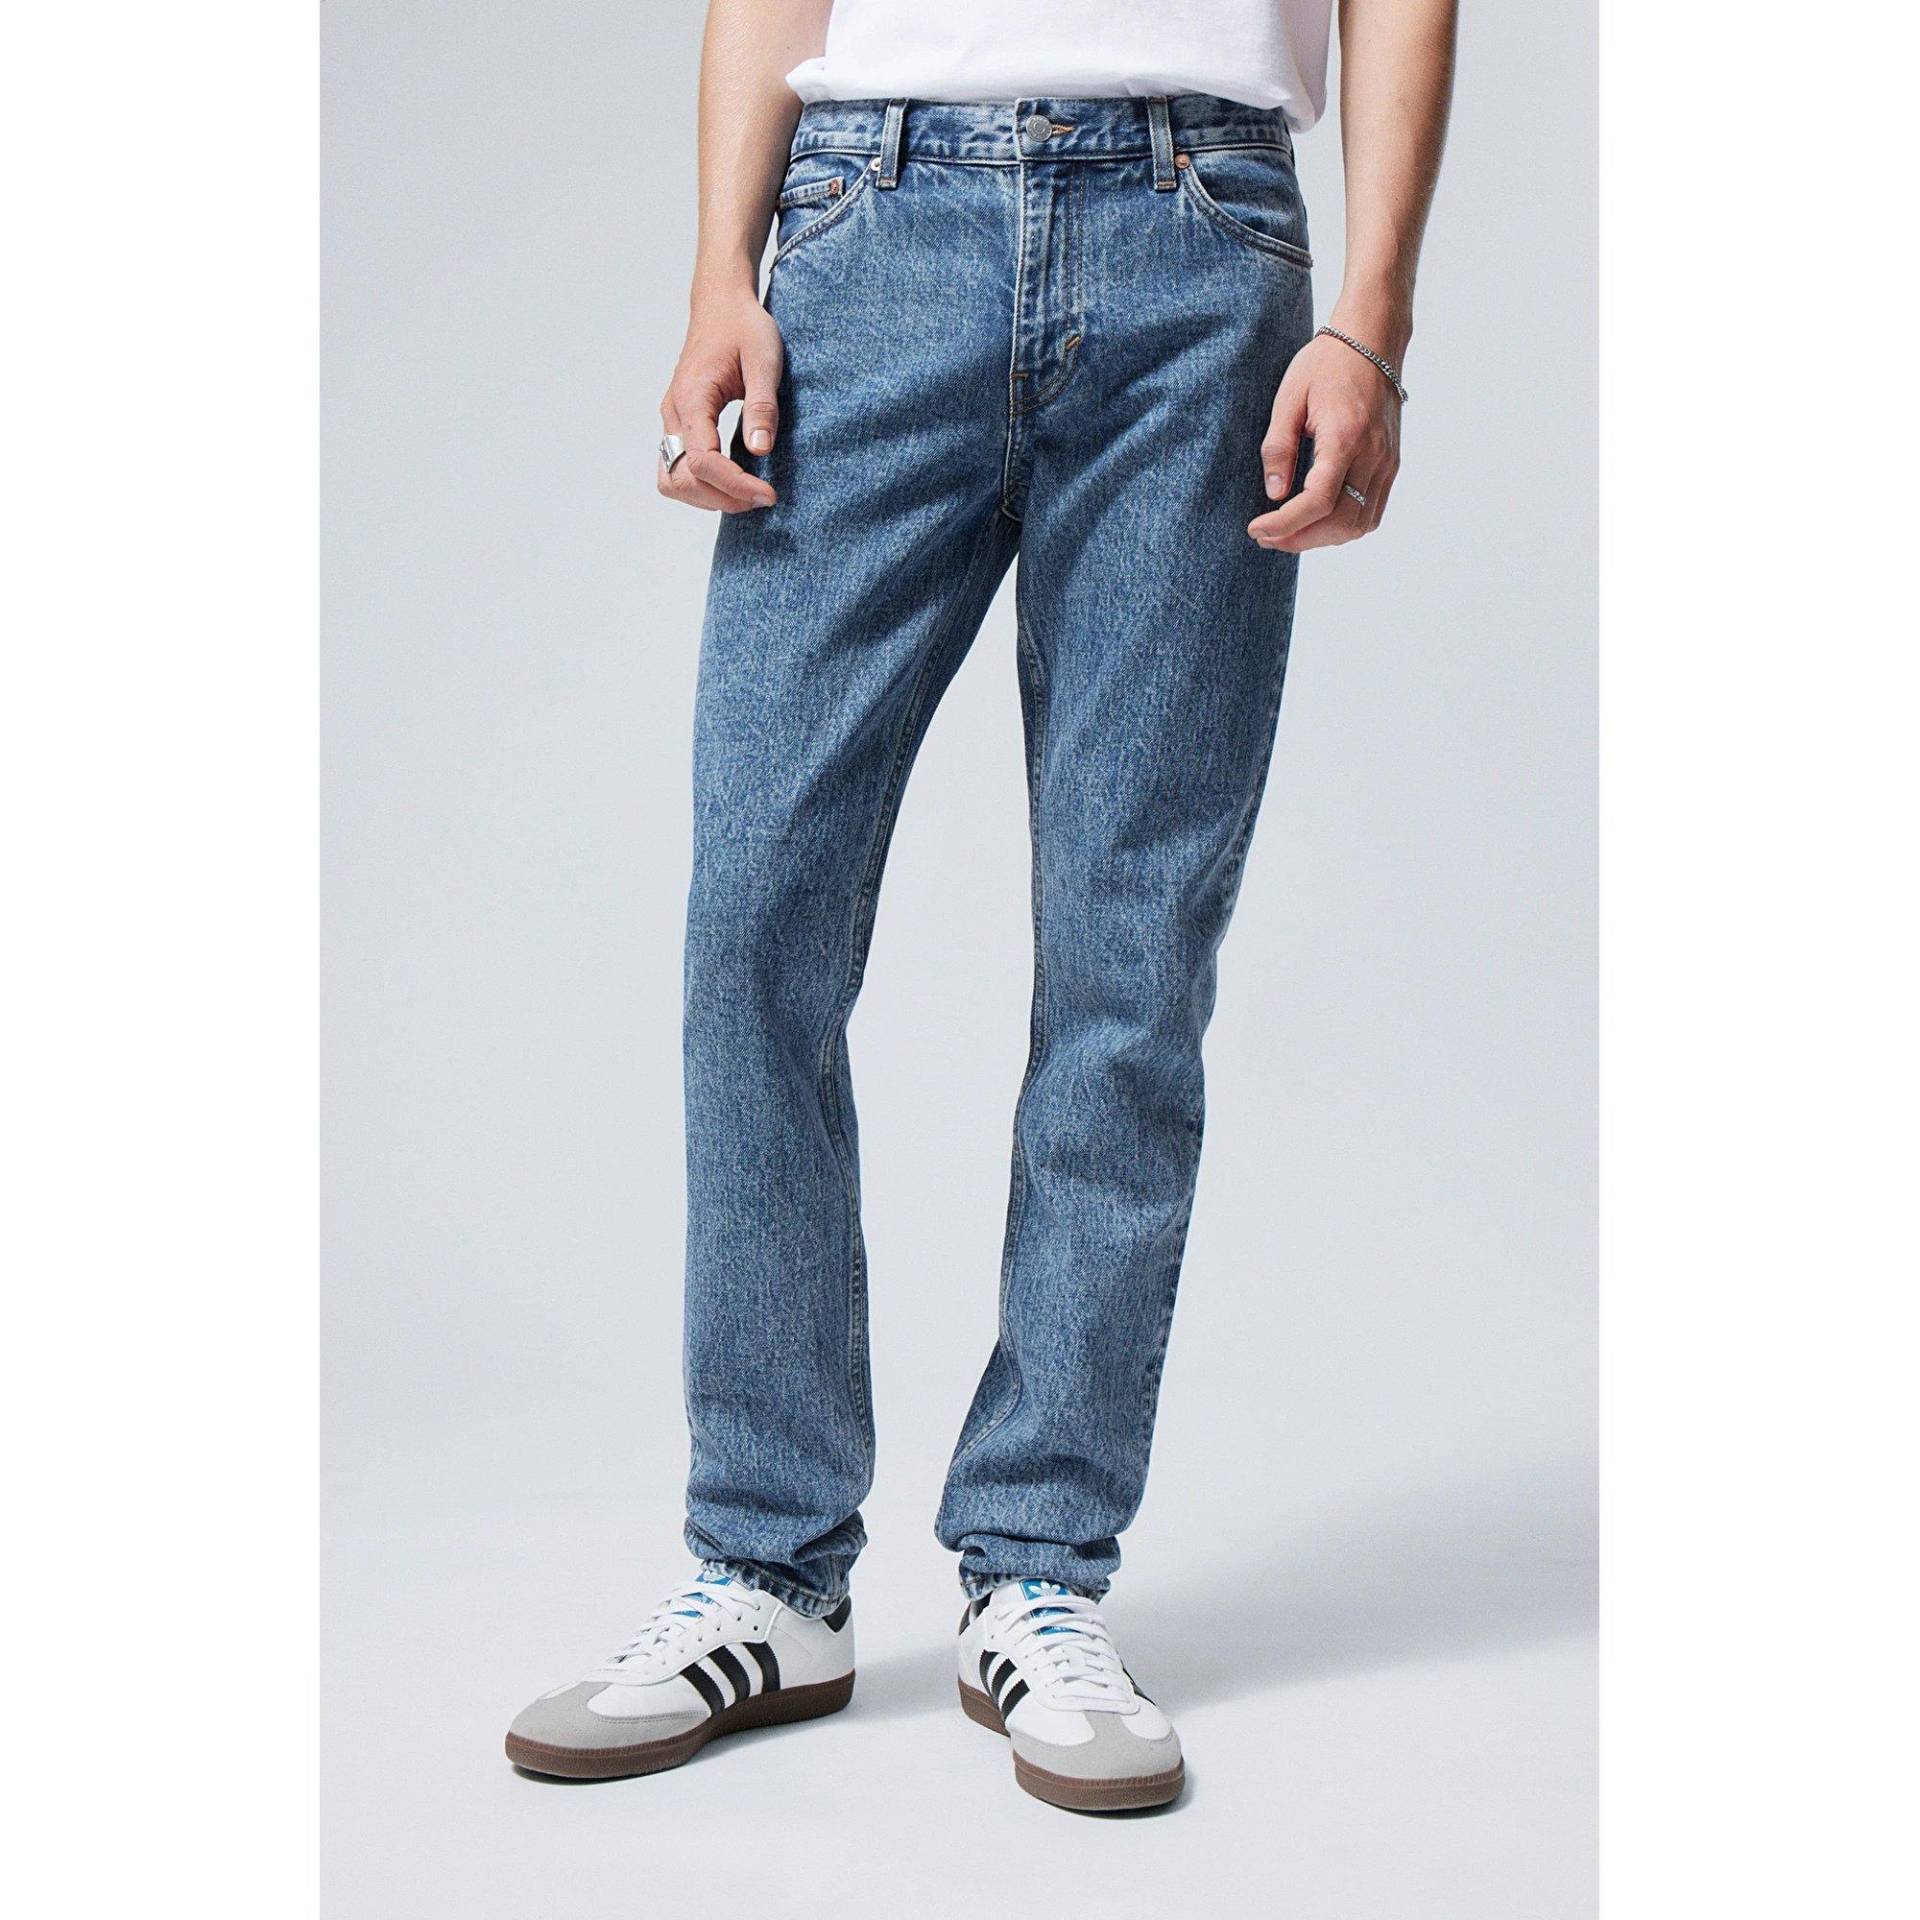 Jeans, Tapered Slim Fit Herren Blau L30/W34 von WEEKDAY